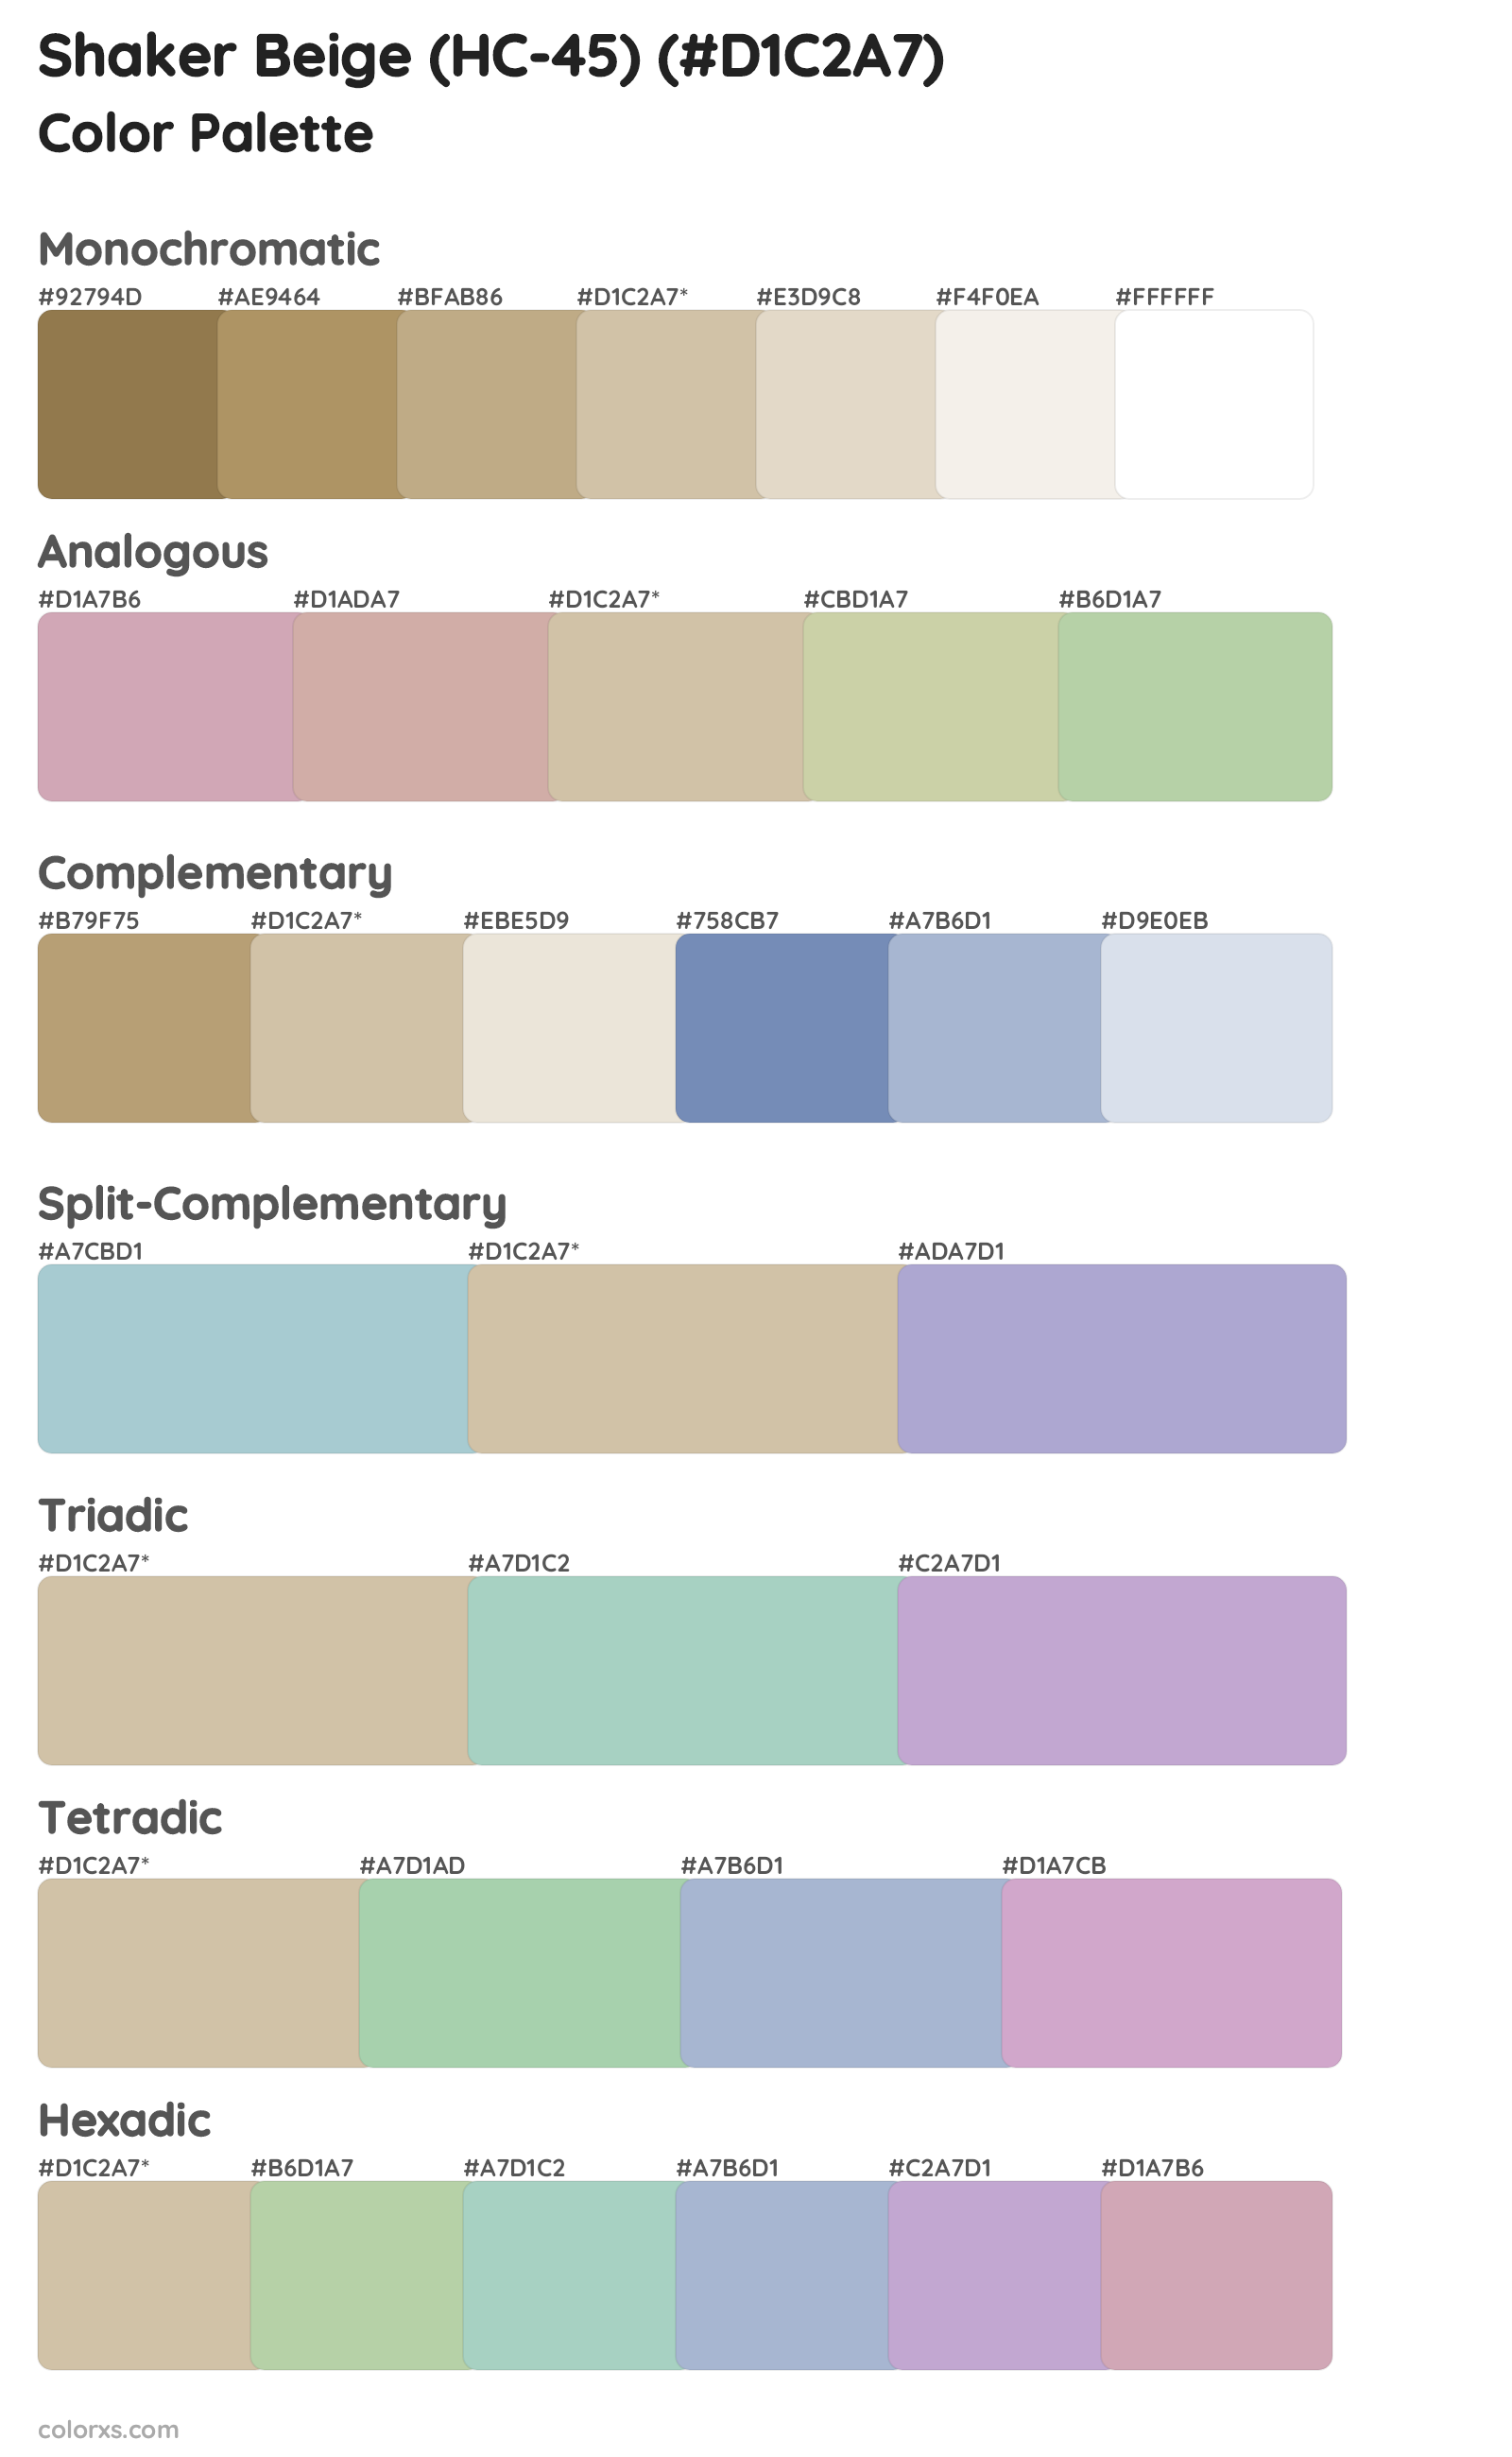 Shaker Beige (HC-45) Color Scheme Palettes